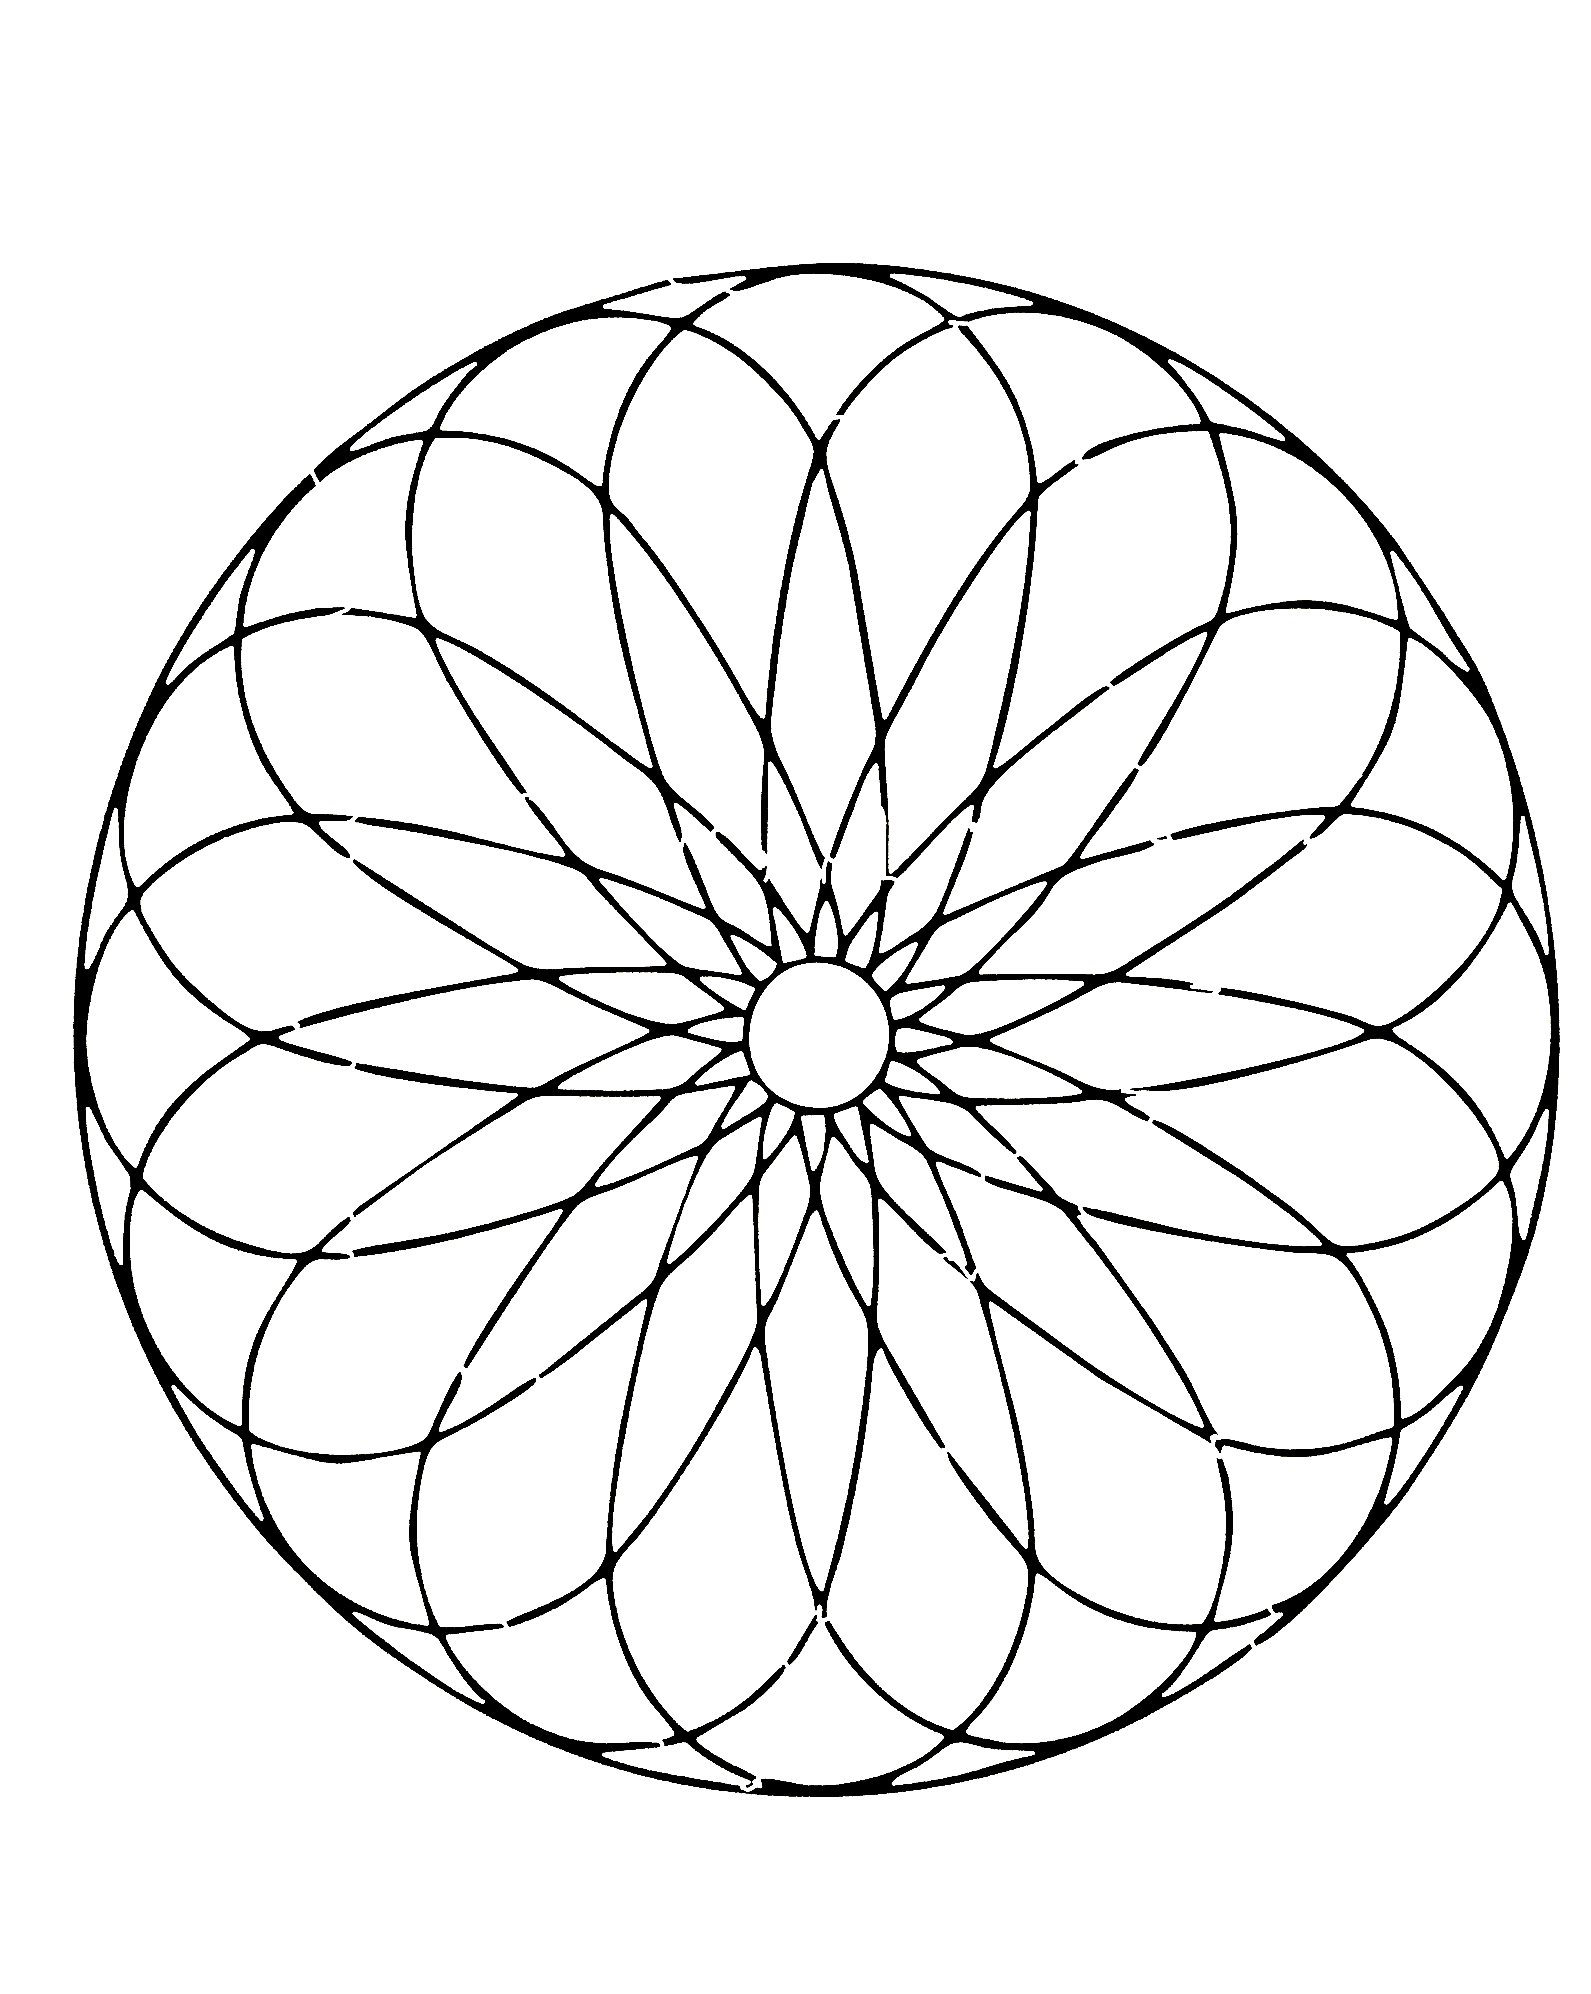 Très joli mandala avec spirale, avec une très belle fleur au centre de celui-ci.